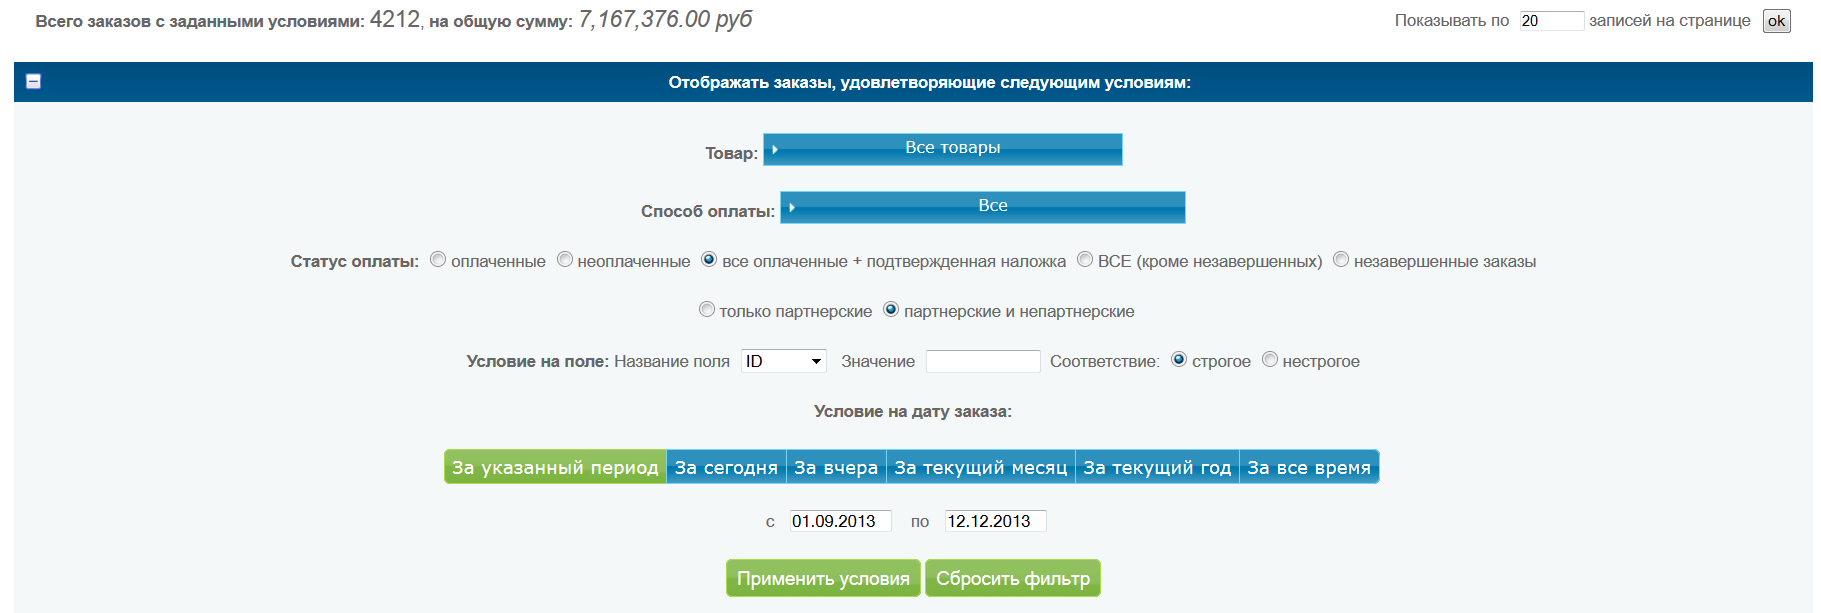 Как заработать более чем 50 тысяч рублей до конца этого года?, Miracle, 31 июл 2014, 17:43, clip7703627_47Kb.png